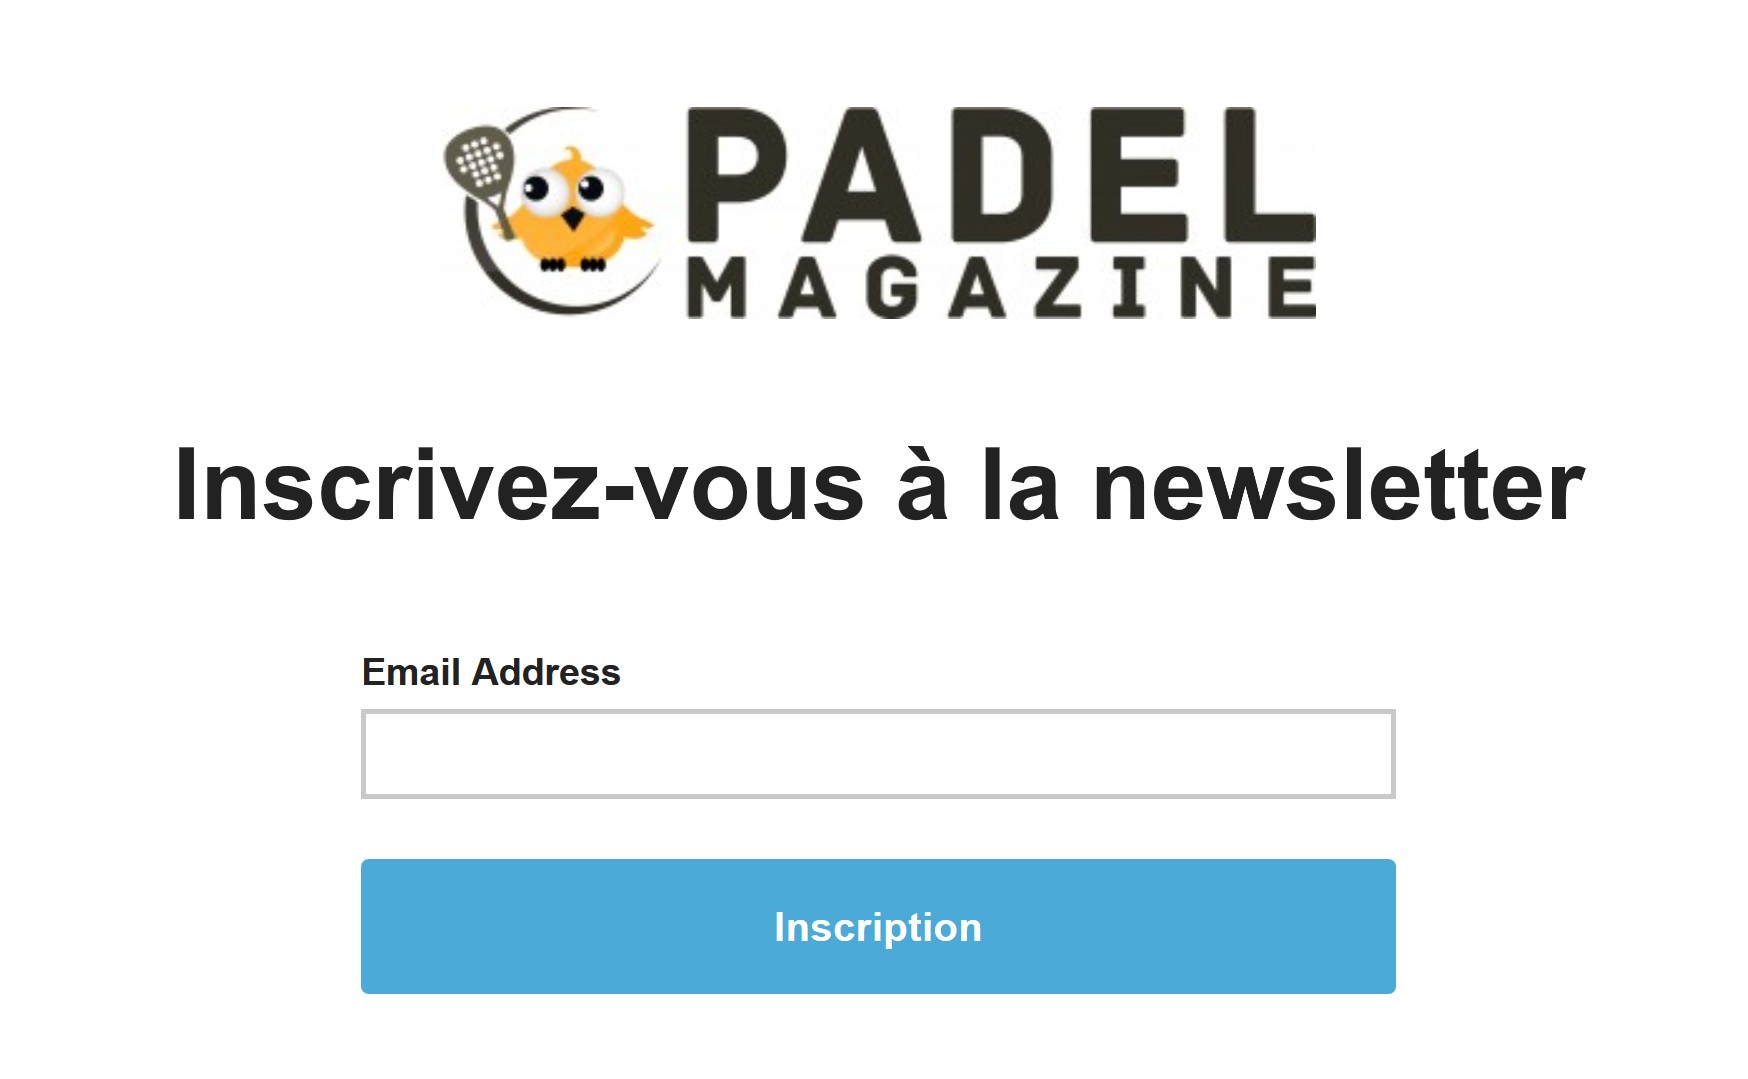 Folgen Sie dem Newsletter von Padel Magazine